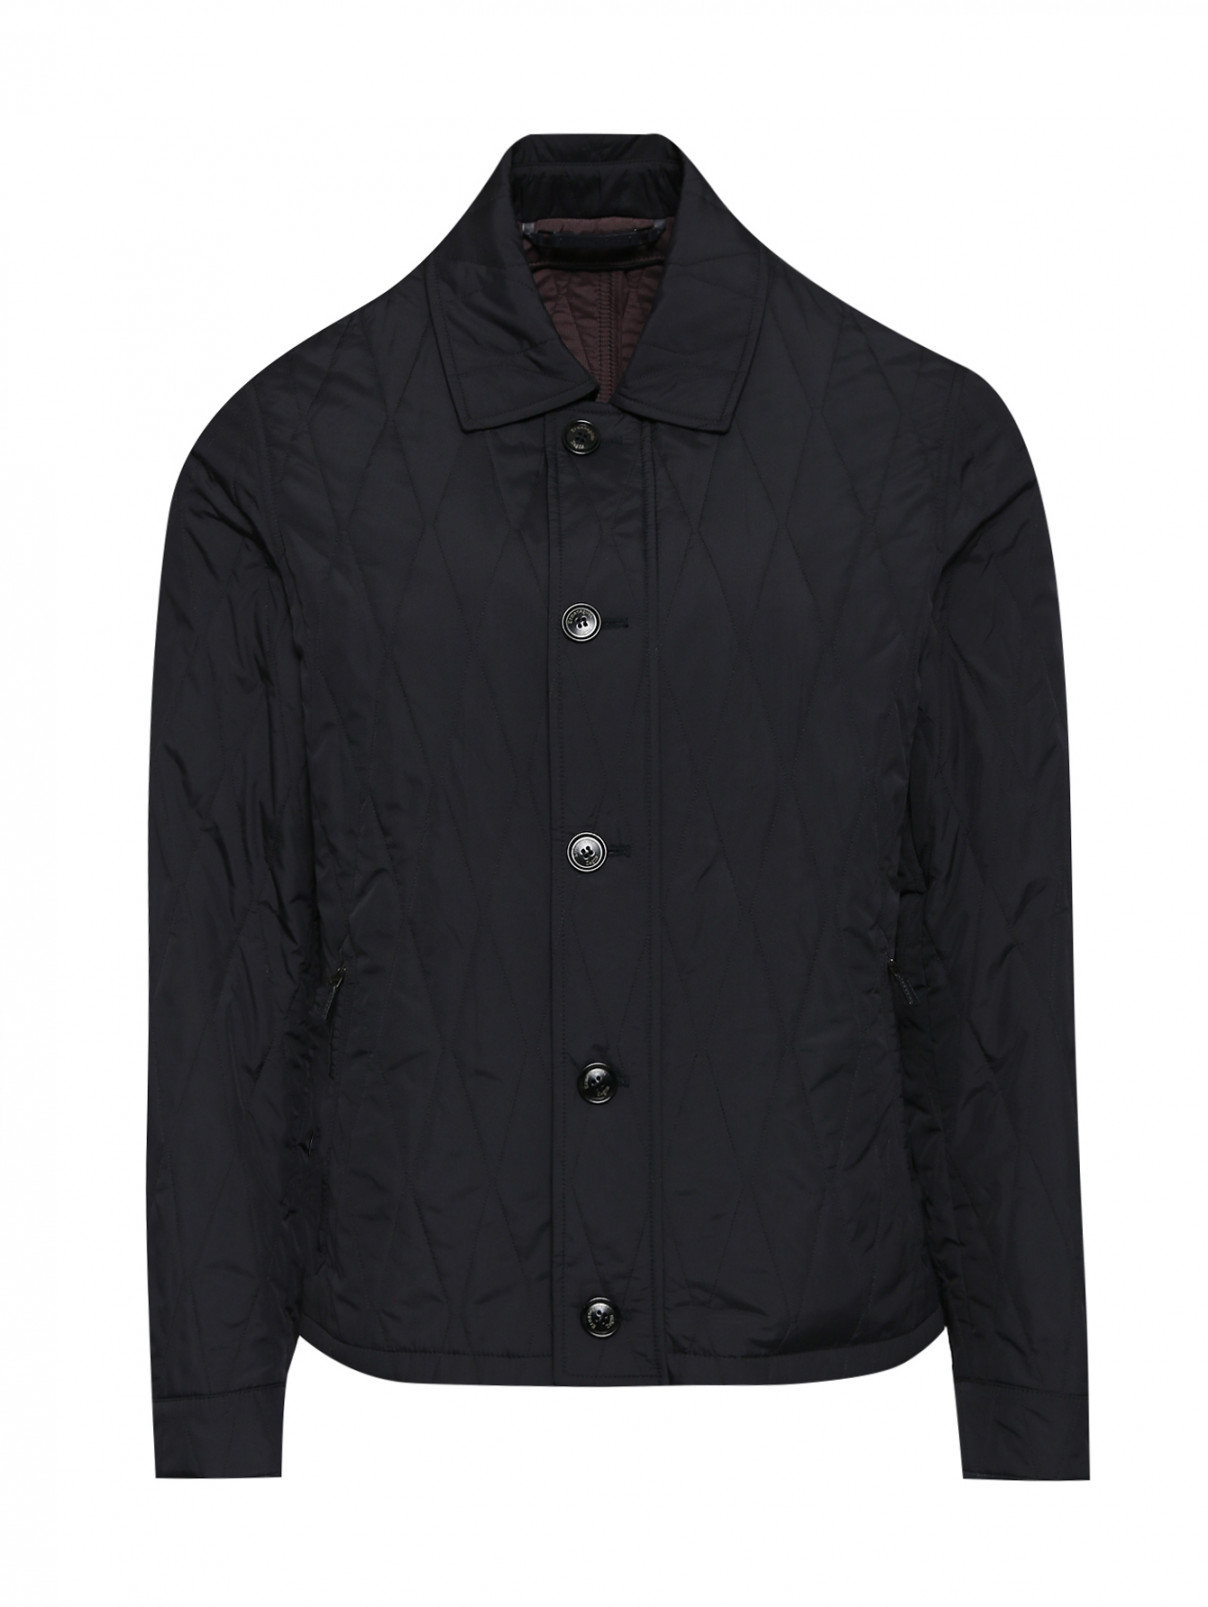 Куртка стеганая на молнии Ermenegildo Zegna  –  Общий вид  – Цвет:  Черный